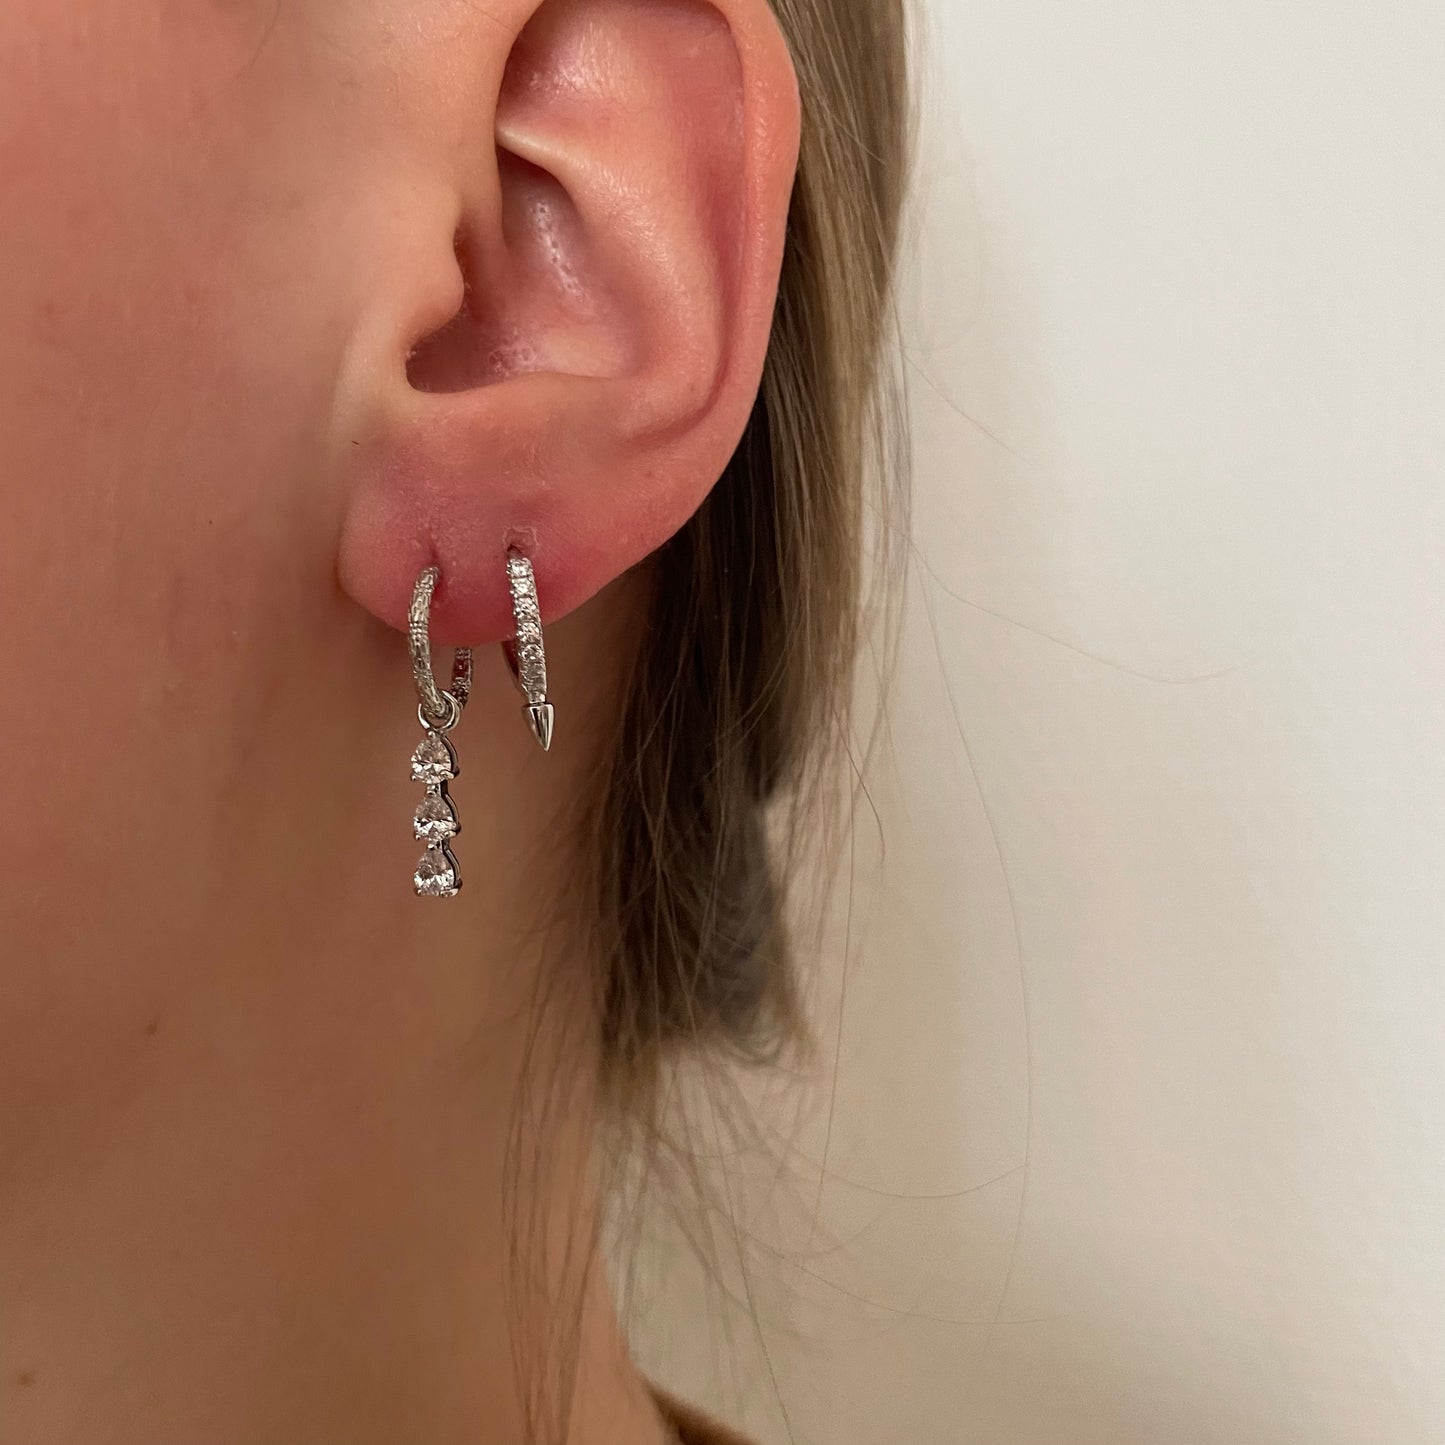 3 diamonds earrings silver